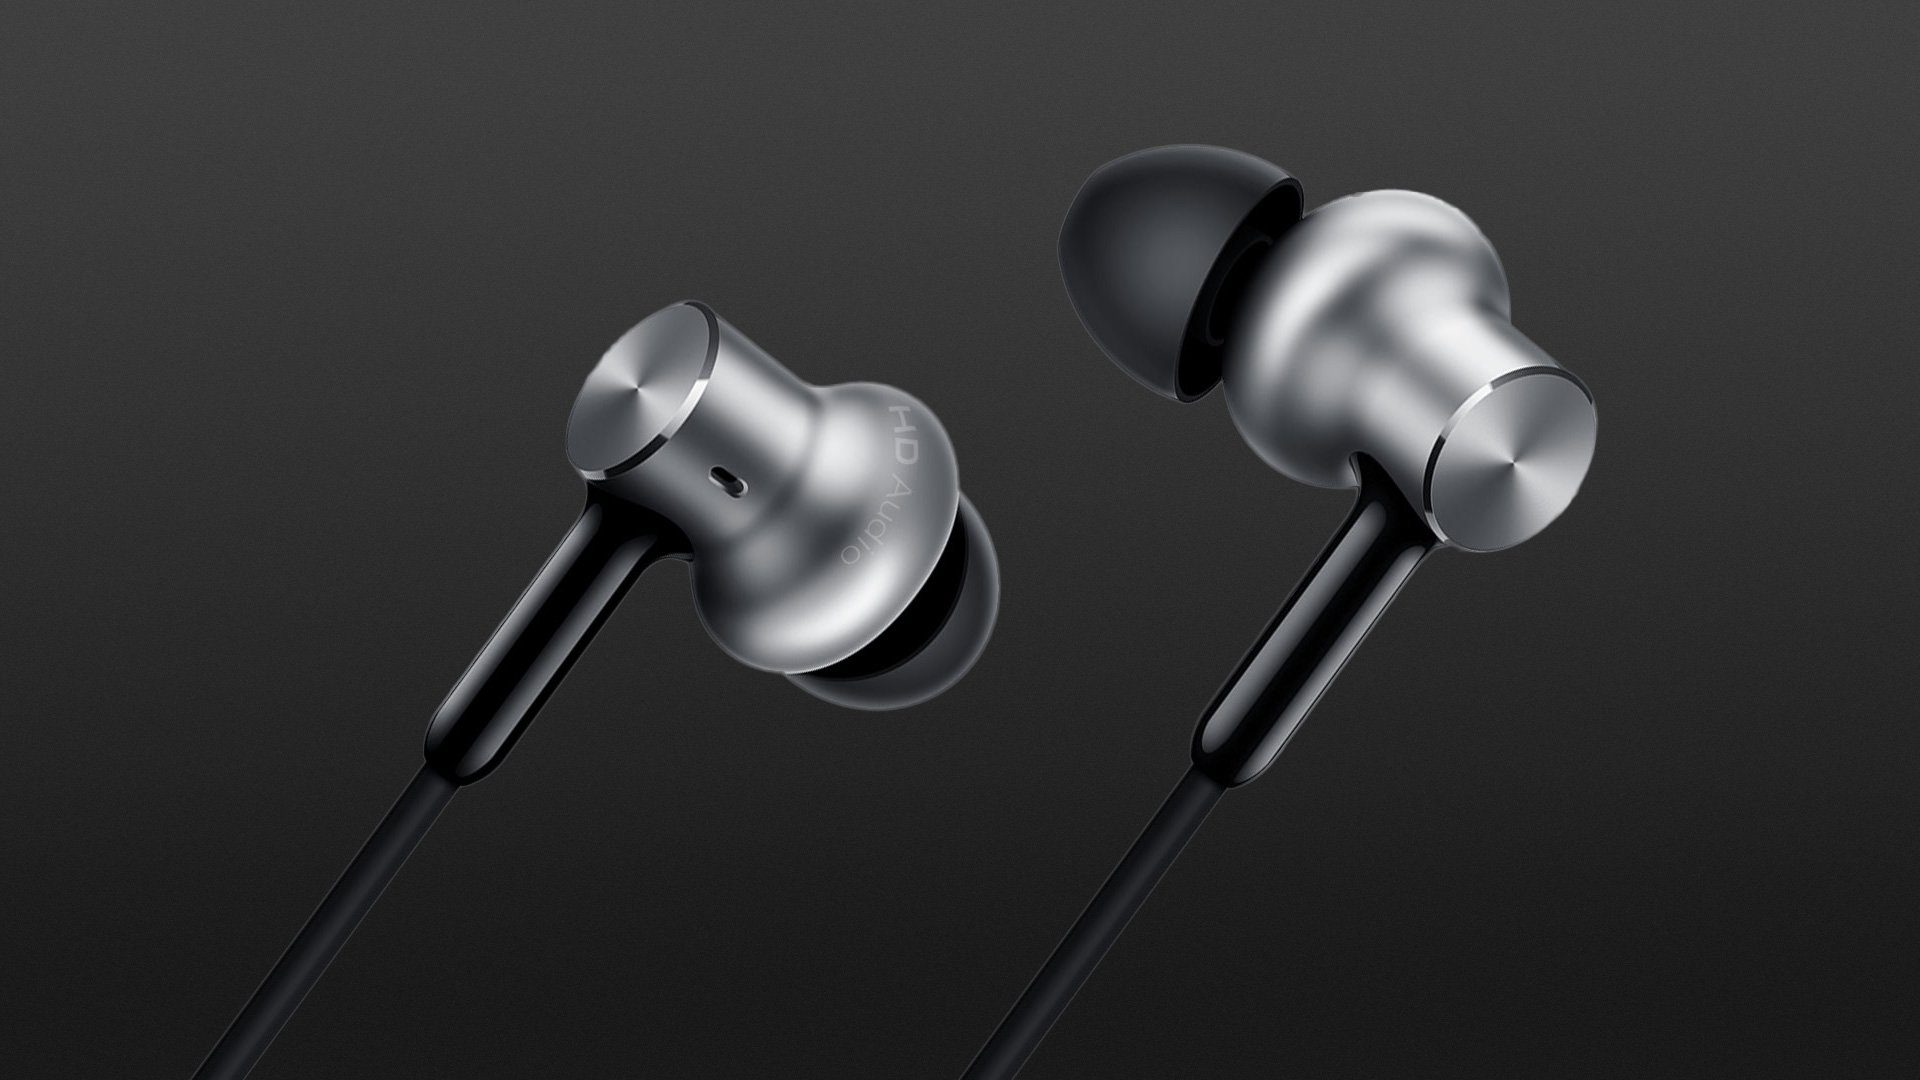 Xiaomi Mi In-Ear Headphones Pro HD